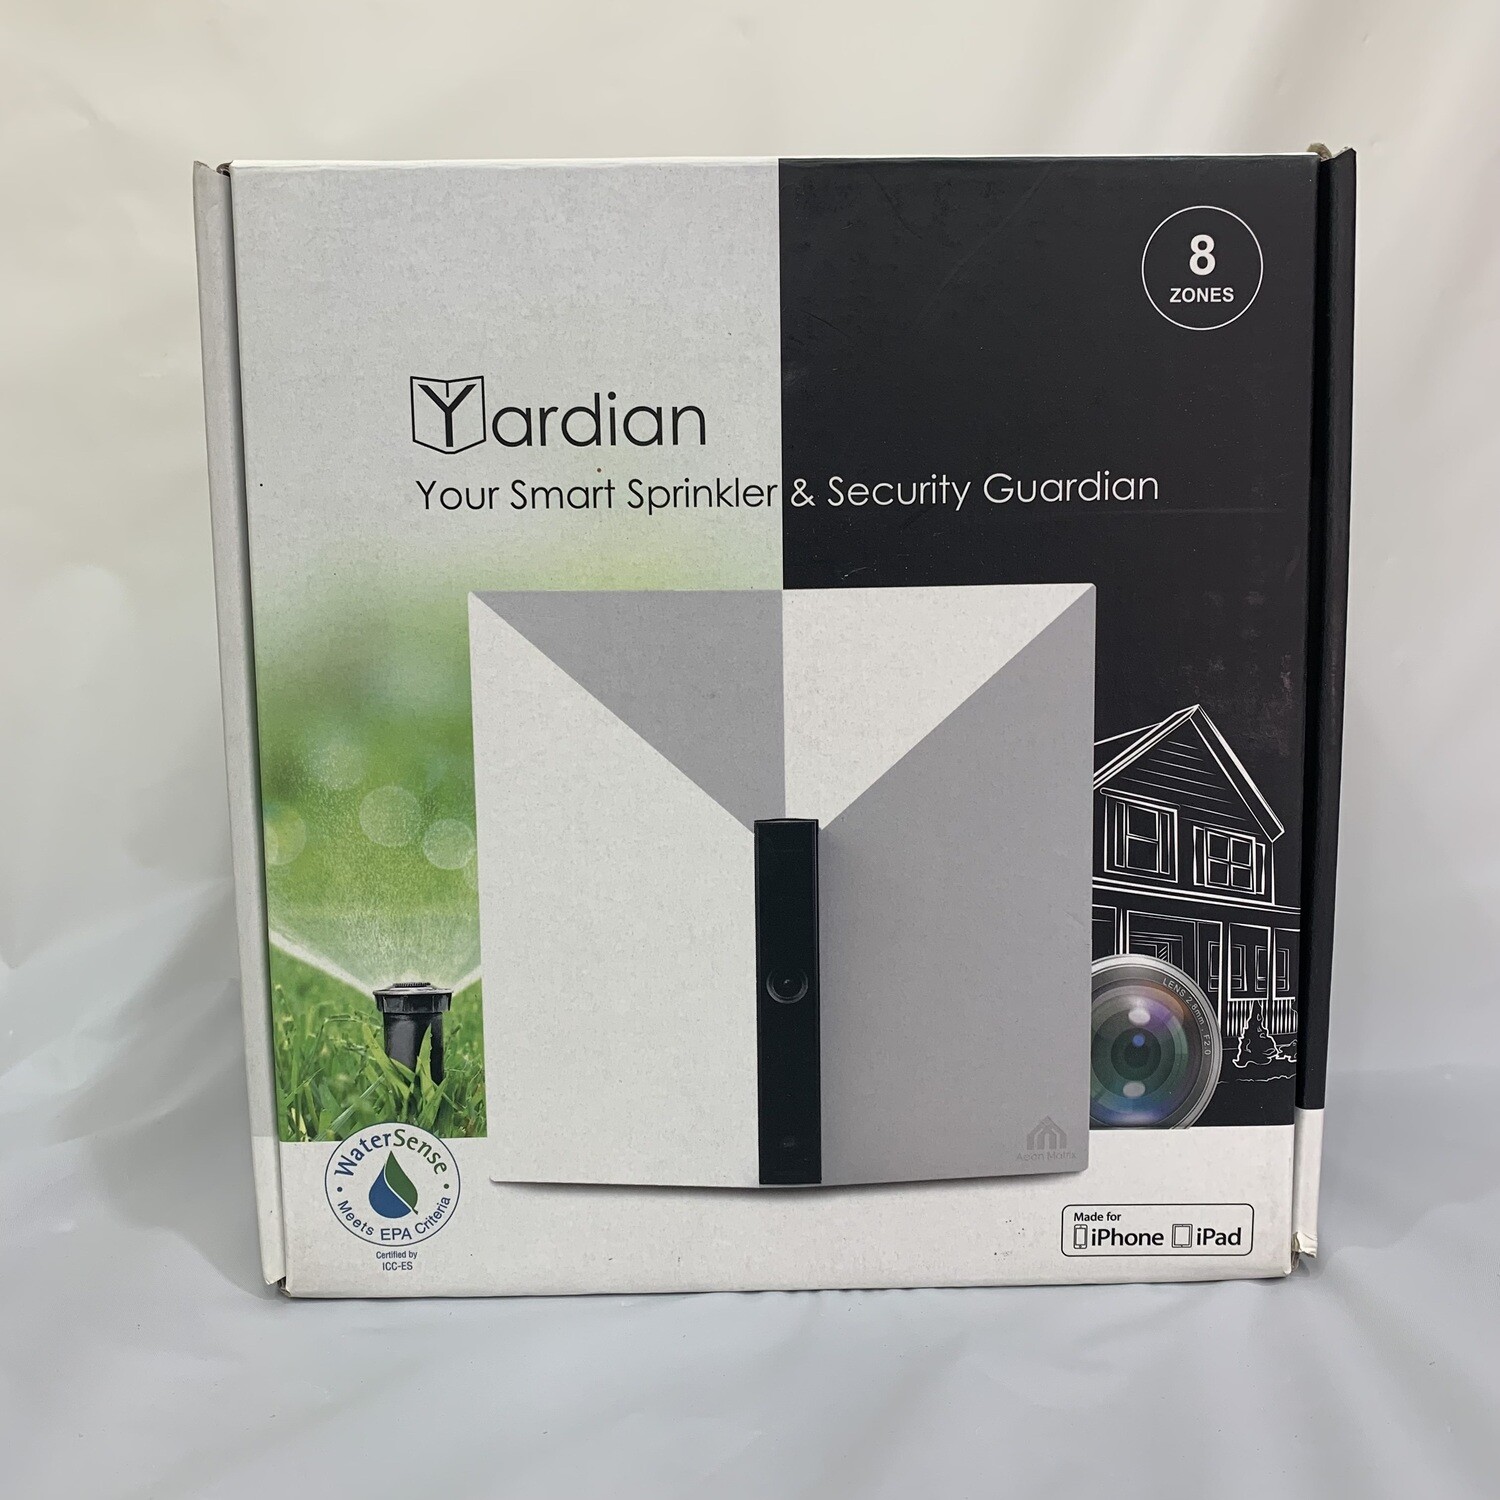 Yardian Smart Sprinkler & Security System